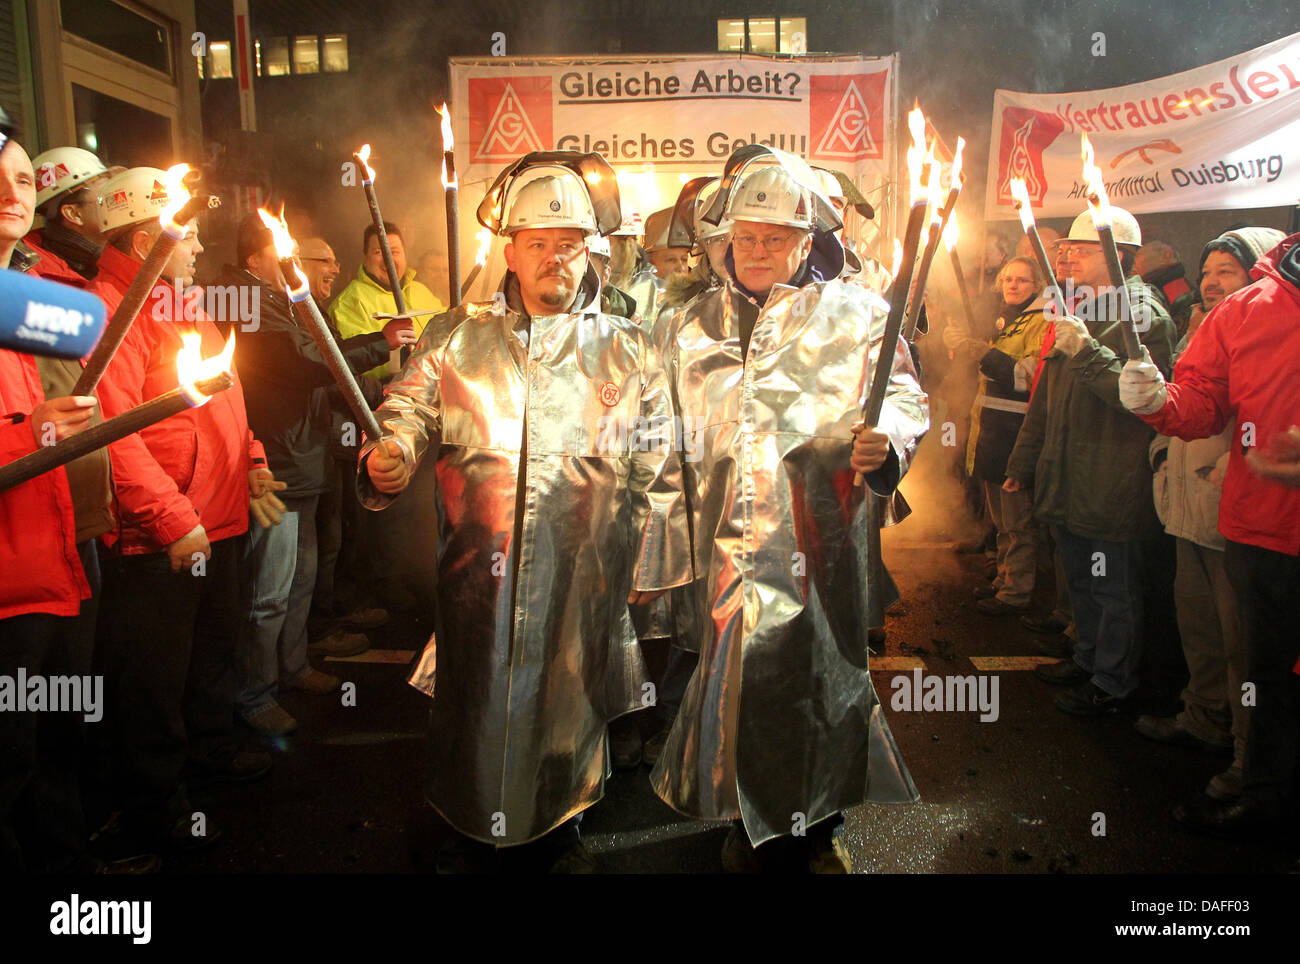 Stahlarbeiter der ThyssenKrupp AG demonstrieren am Donnerstag (24.02.2011) vor dem Tor 1 a Duisburg. Sie beteiligen sich am bundesweiten Aktionstagder IG Metall zum Thema Leiharbeit. Foto: Roland Weihrauch dpa/lnw Foto Stock